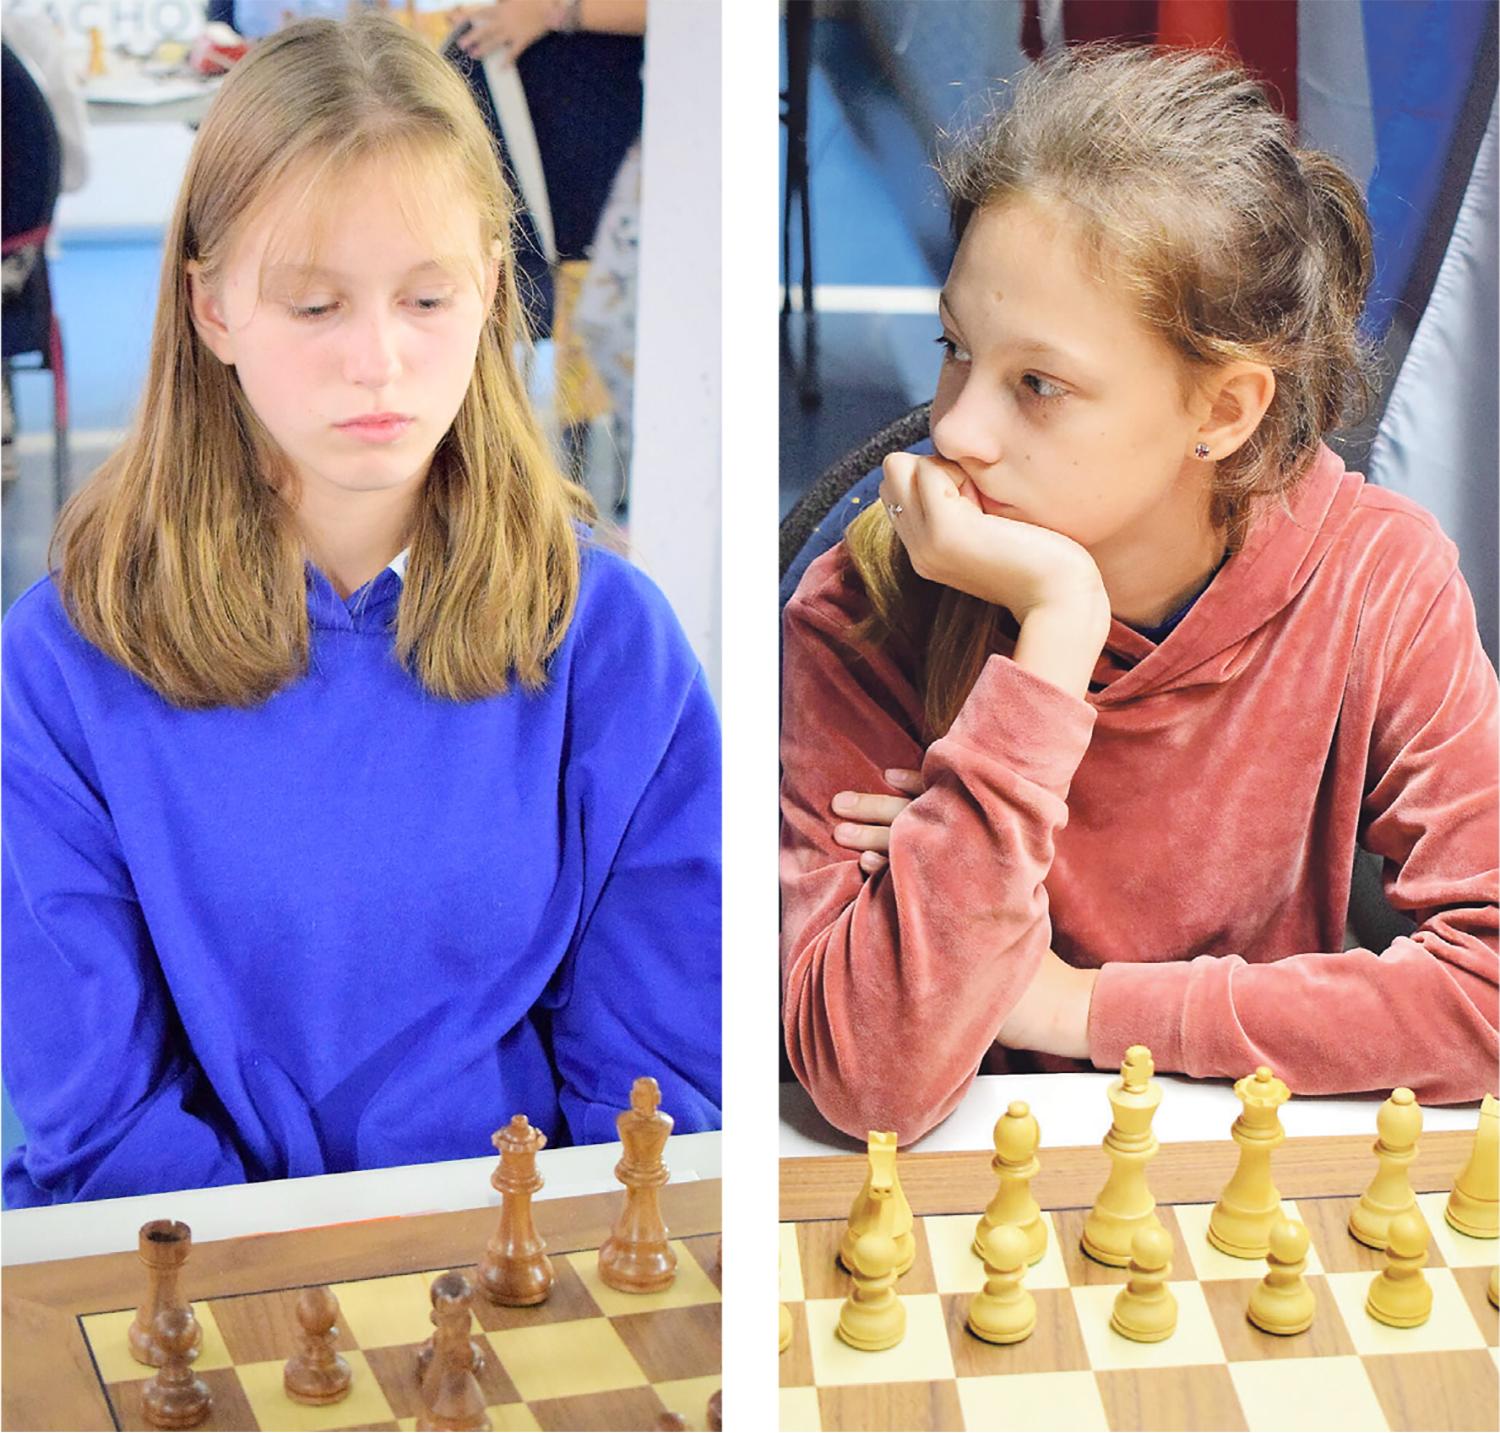 Čempionate Čekijoje sužibėjo Ukmergės šachmatininkės / Ukmergės šachmatininkės Agnė Mickūnaitė ir Mėta Mikulinaitė.